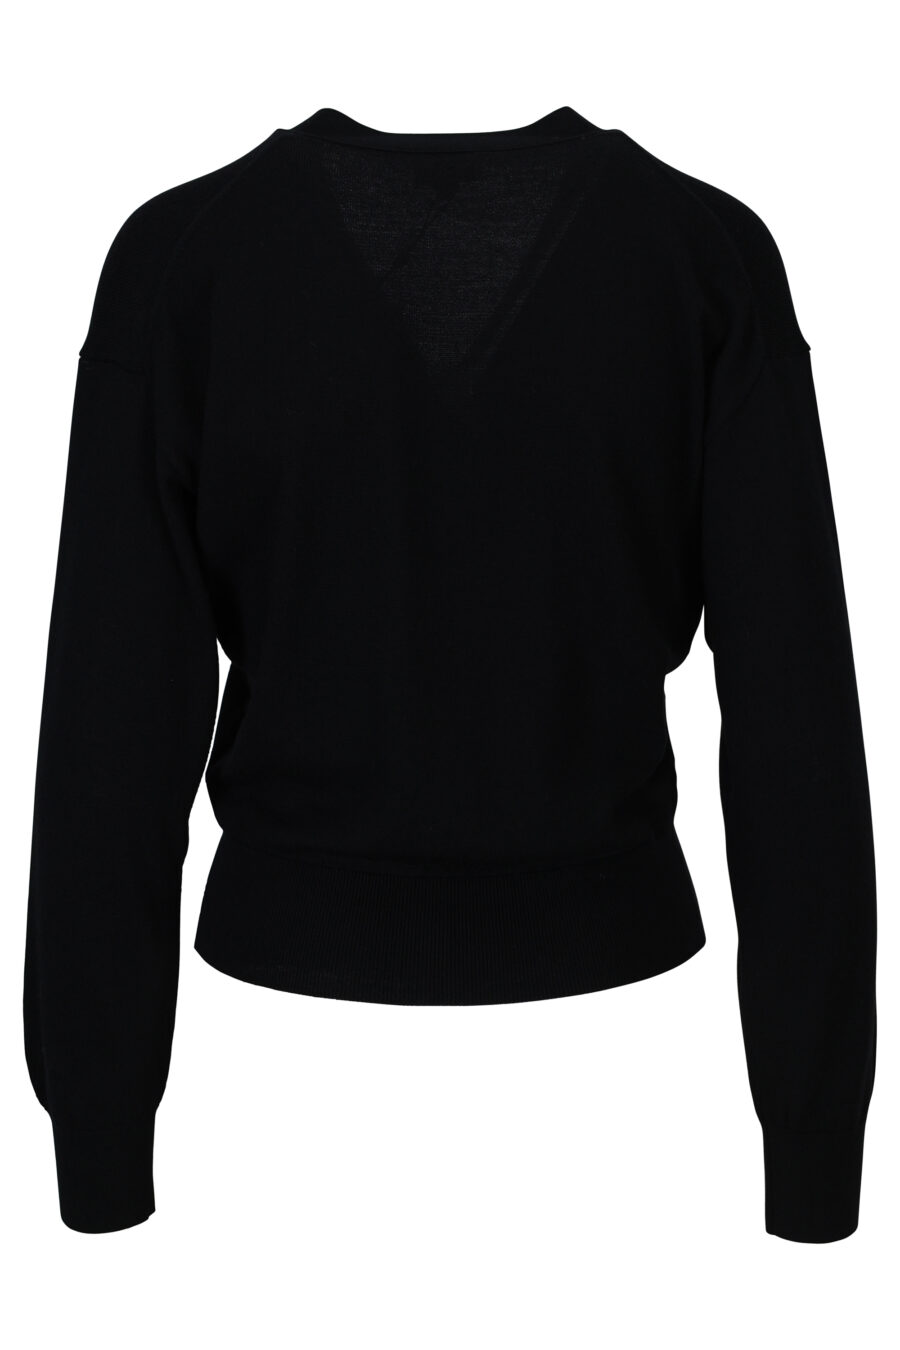 Jersey de lana negro con minilogo "boke flower" - 3612230444249 1